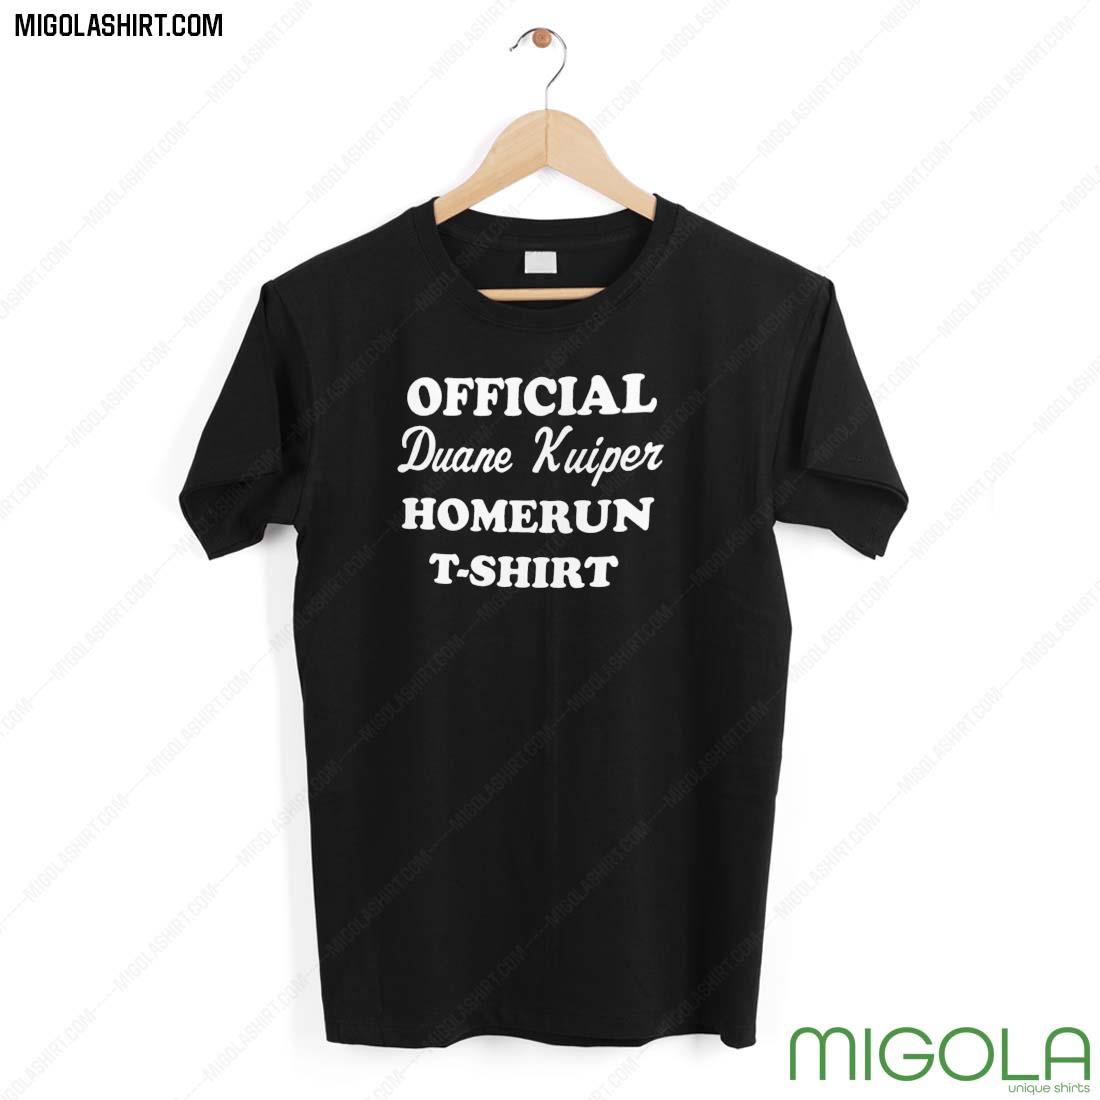 Official Duane Kuiper Homerun Shirt